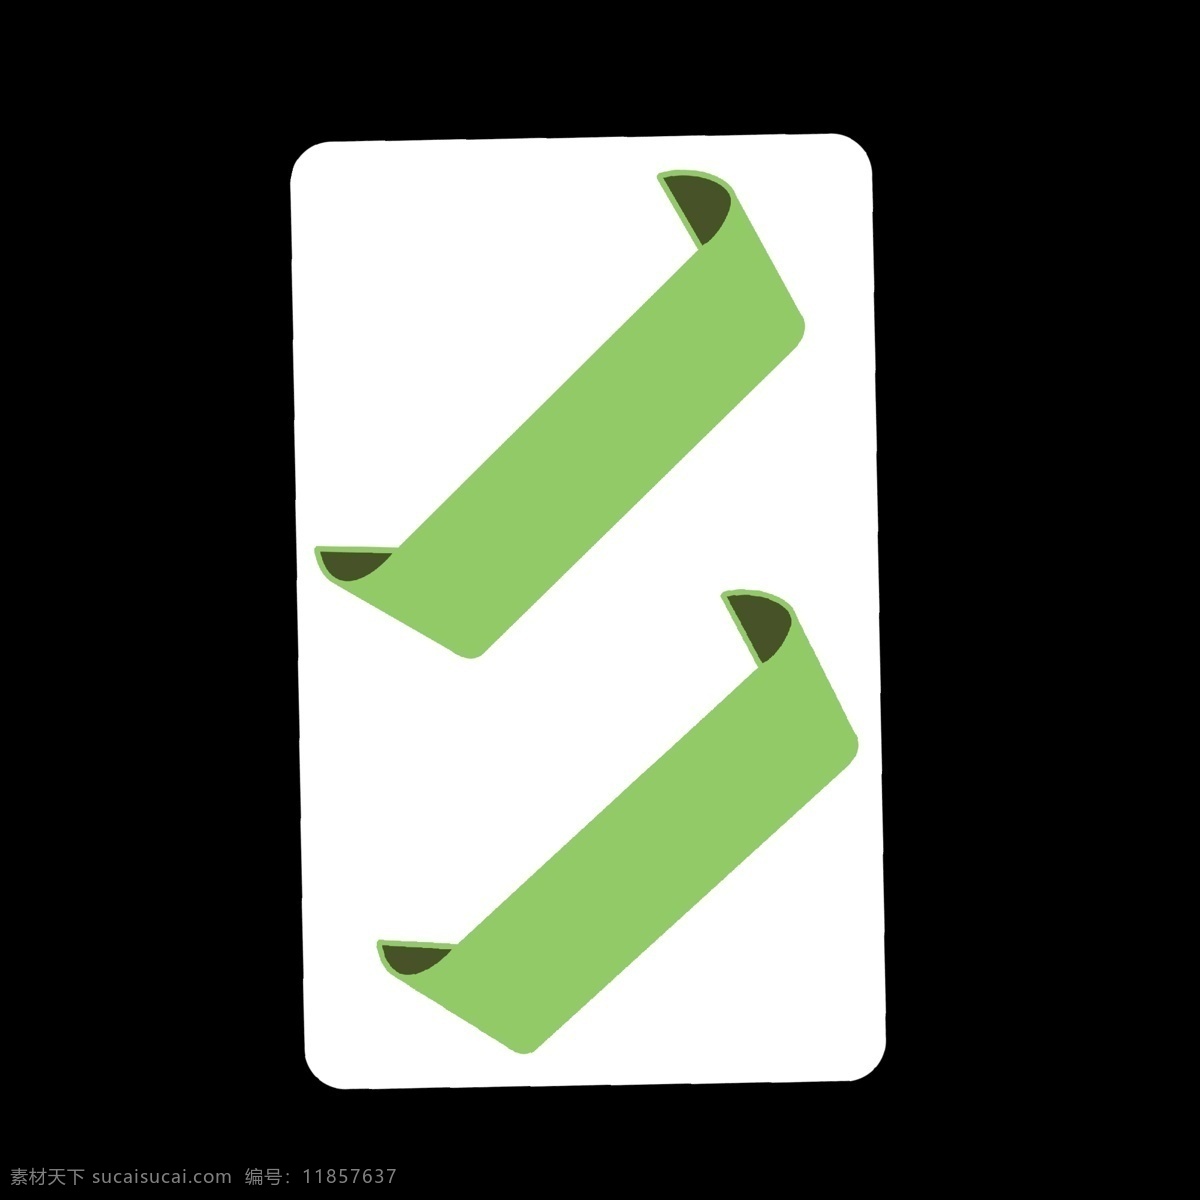 绿色 标签 样式 分类 图标 标签样式 分开 简洁 简约 简单 卡通 ppt专用 分别介绍模板 色块 几何形体